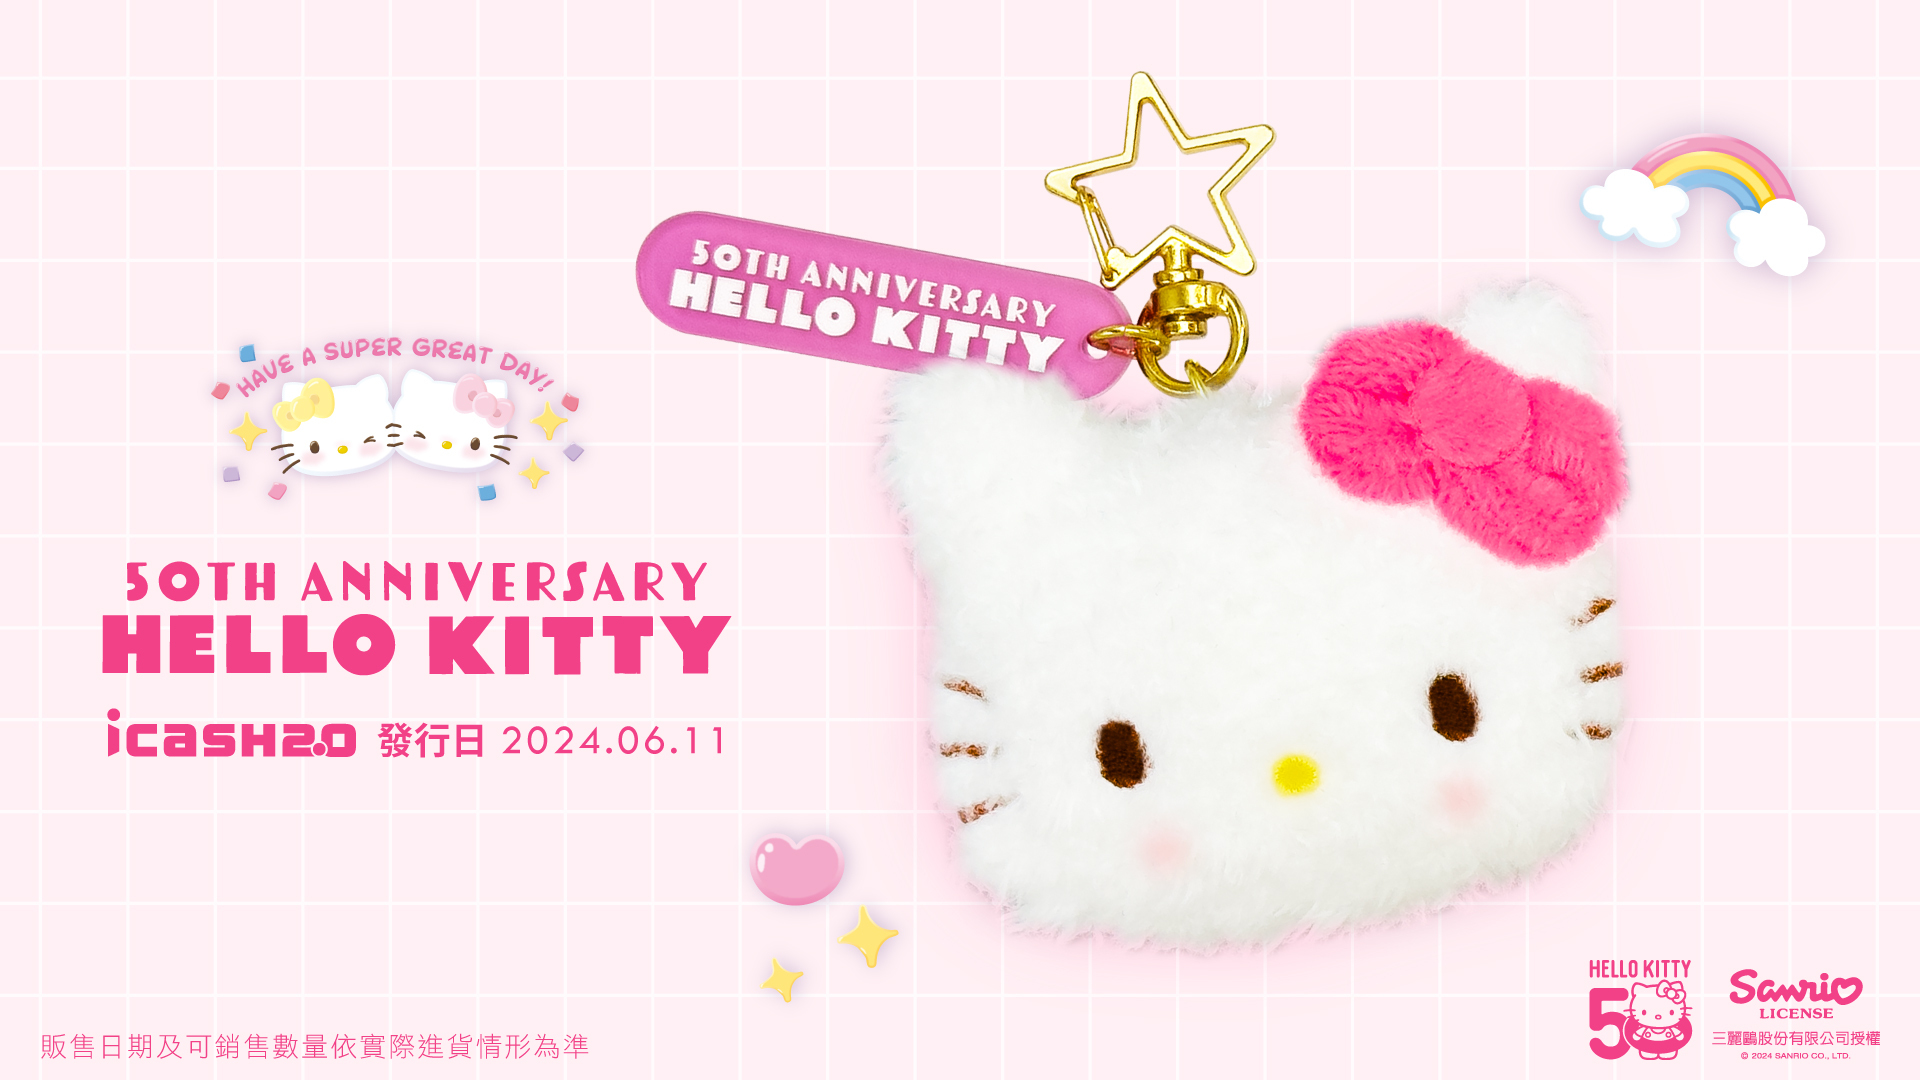 Hello Kitty 50th